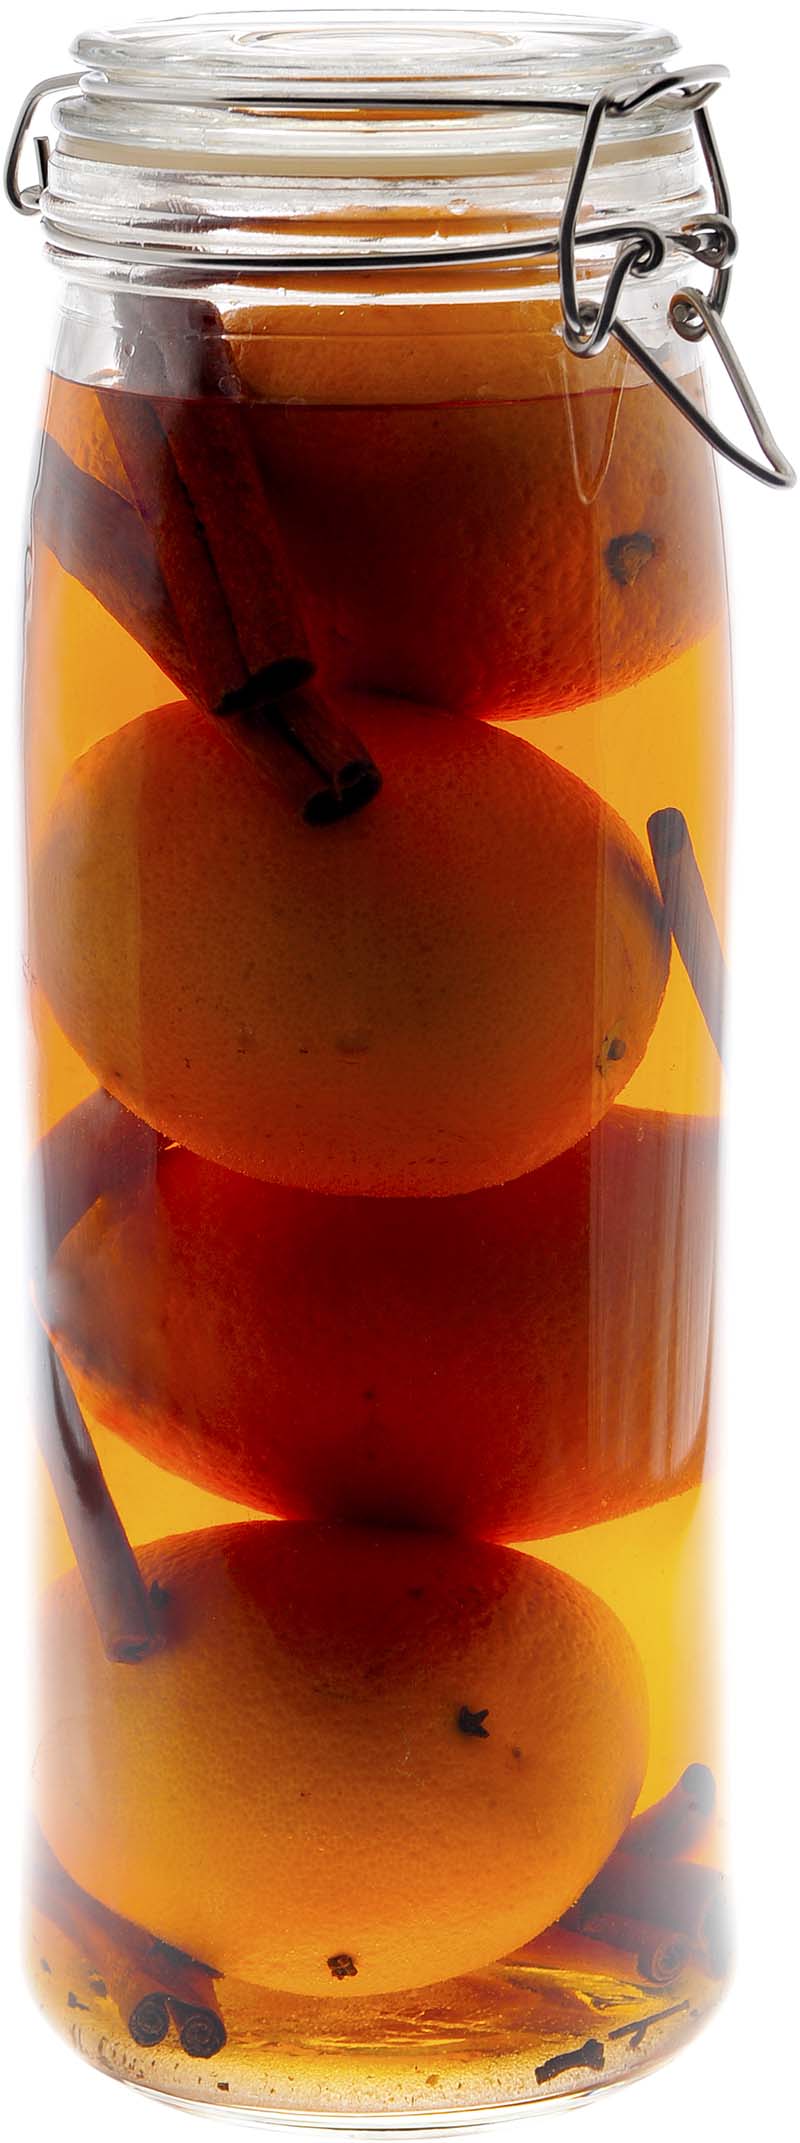 Comment préparer le cocktail Bourbon arrangé aux oranges